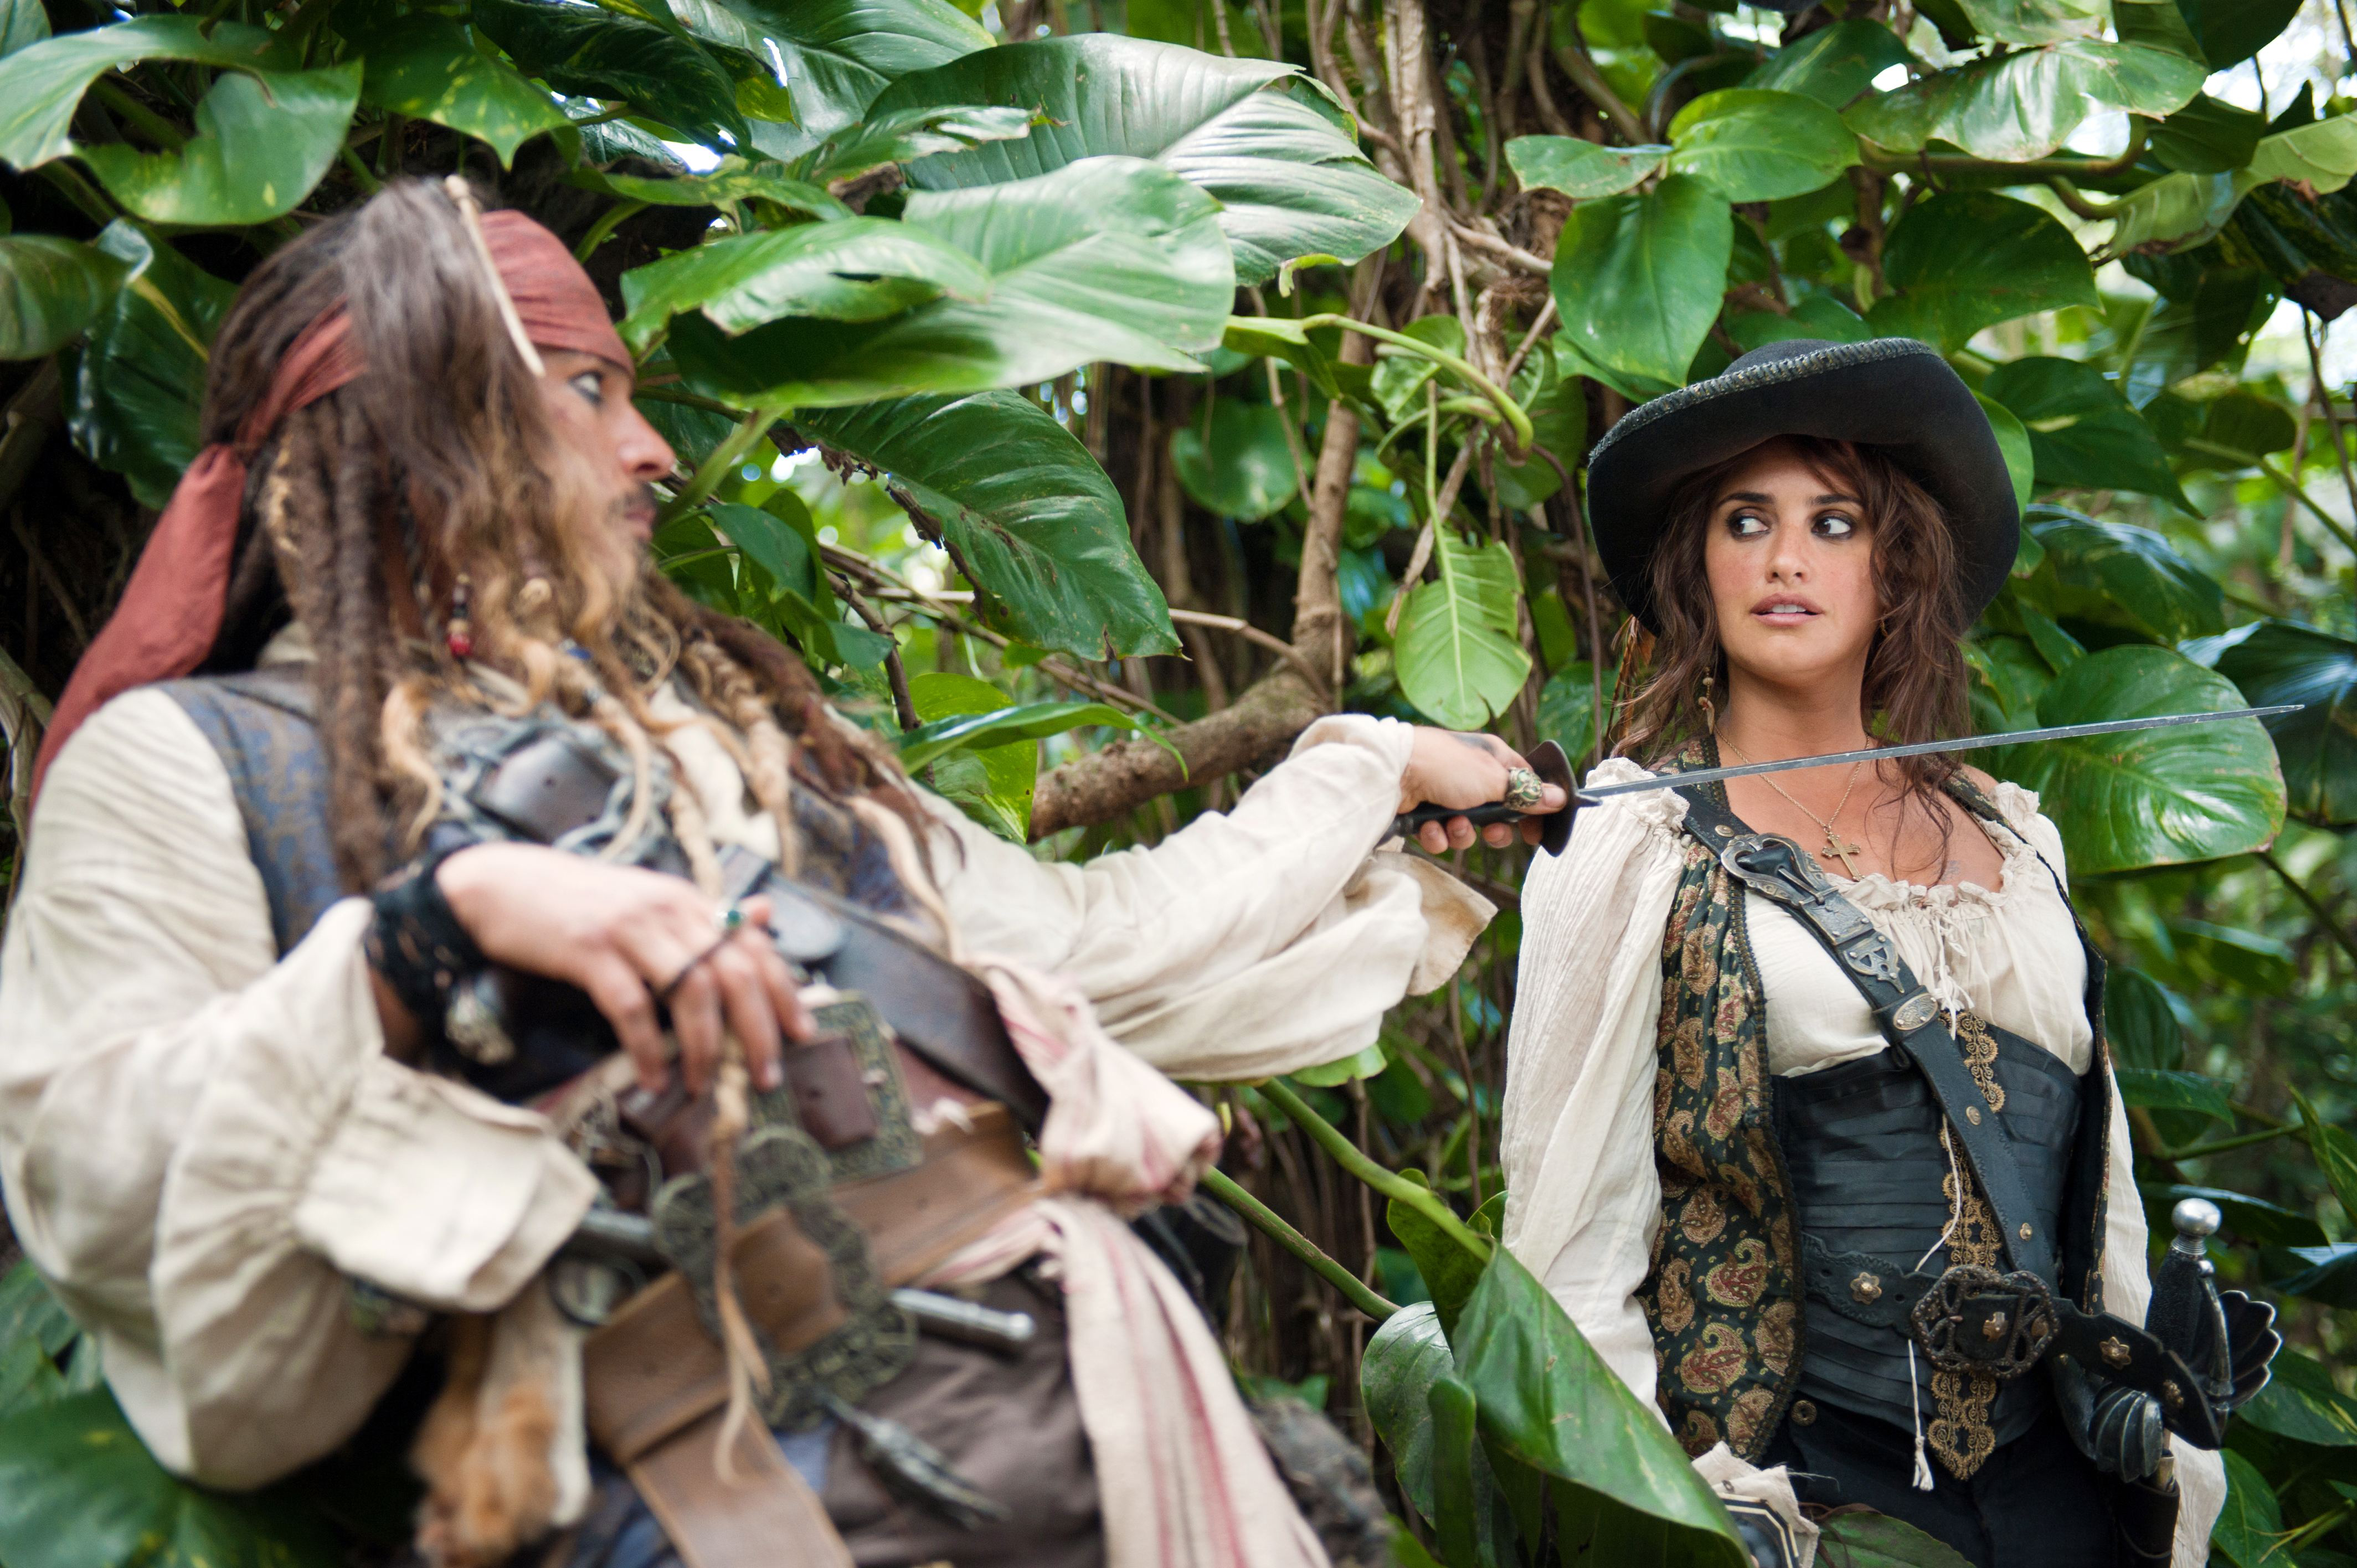 Пираты карибского моря главные герои